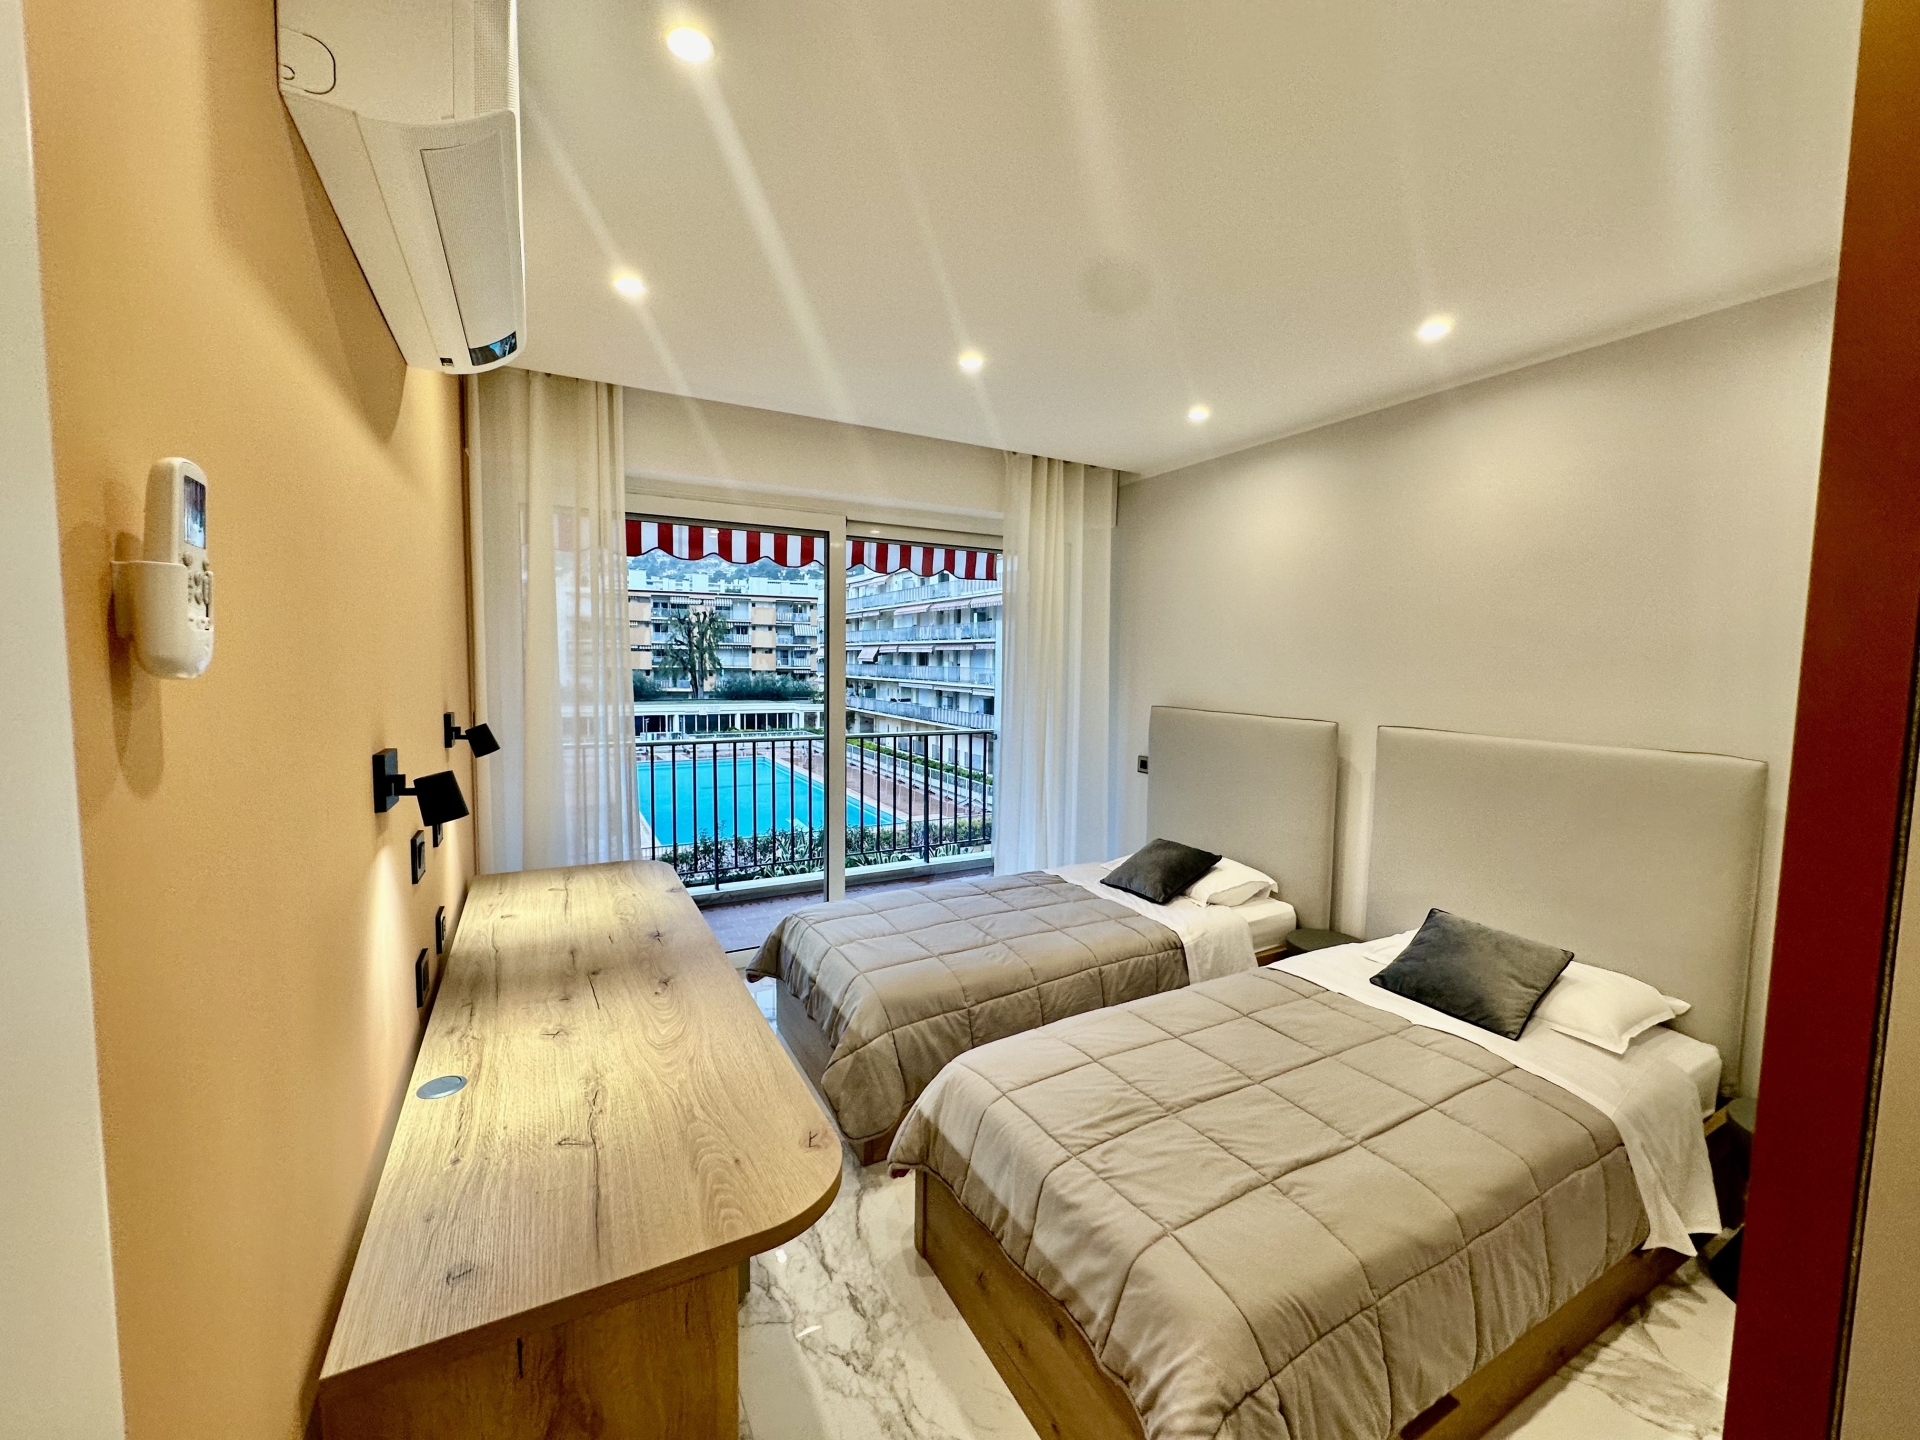 Dotta 3 rooms apartment for sale - ALOES ET BOUGAINVILLIERS - Roquebrune-Cap-Martin - Roquebrune-Cap-Martin - imgimage00002